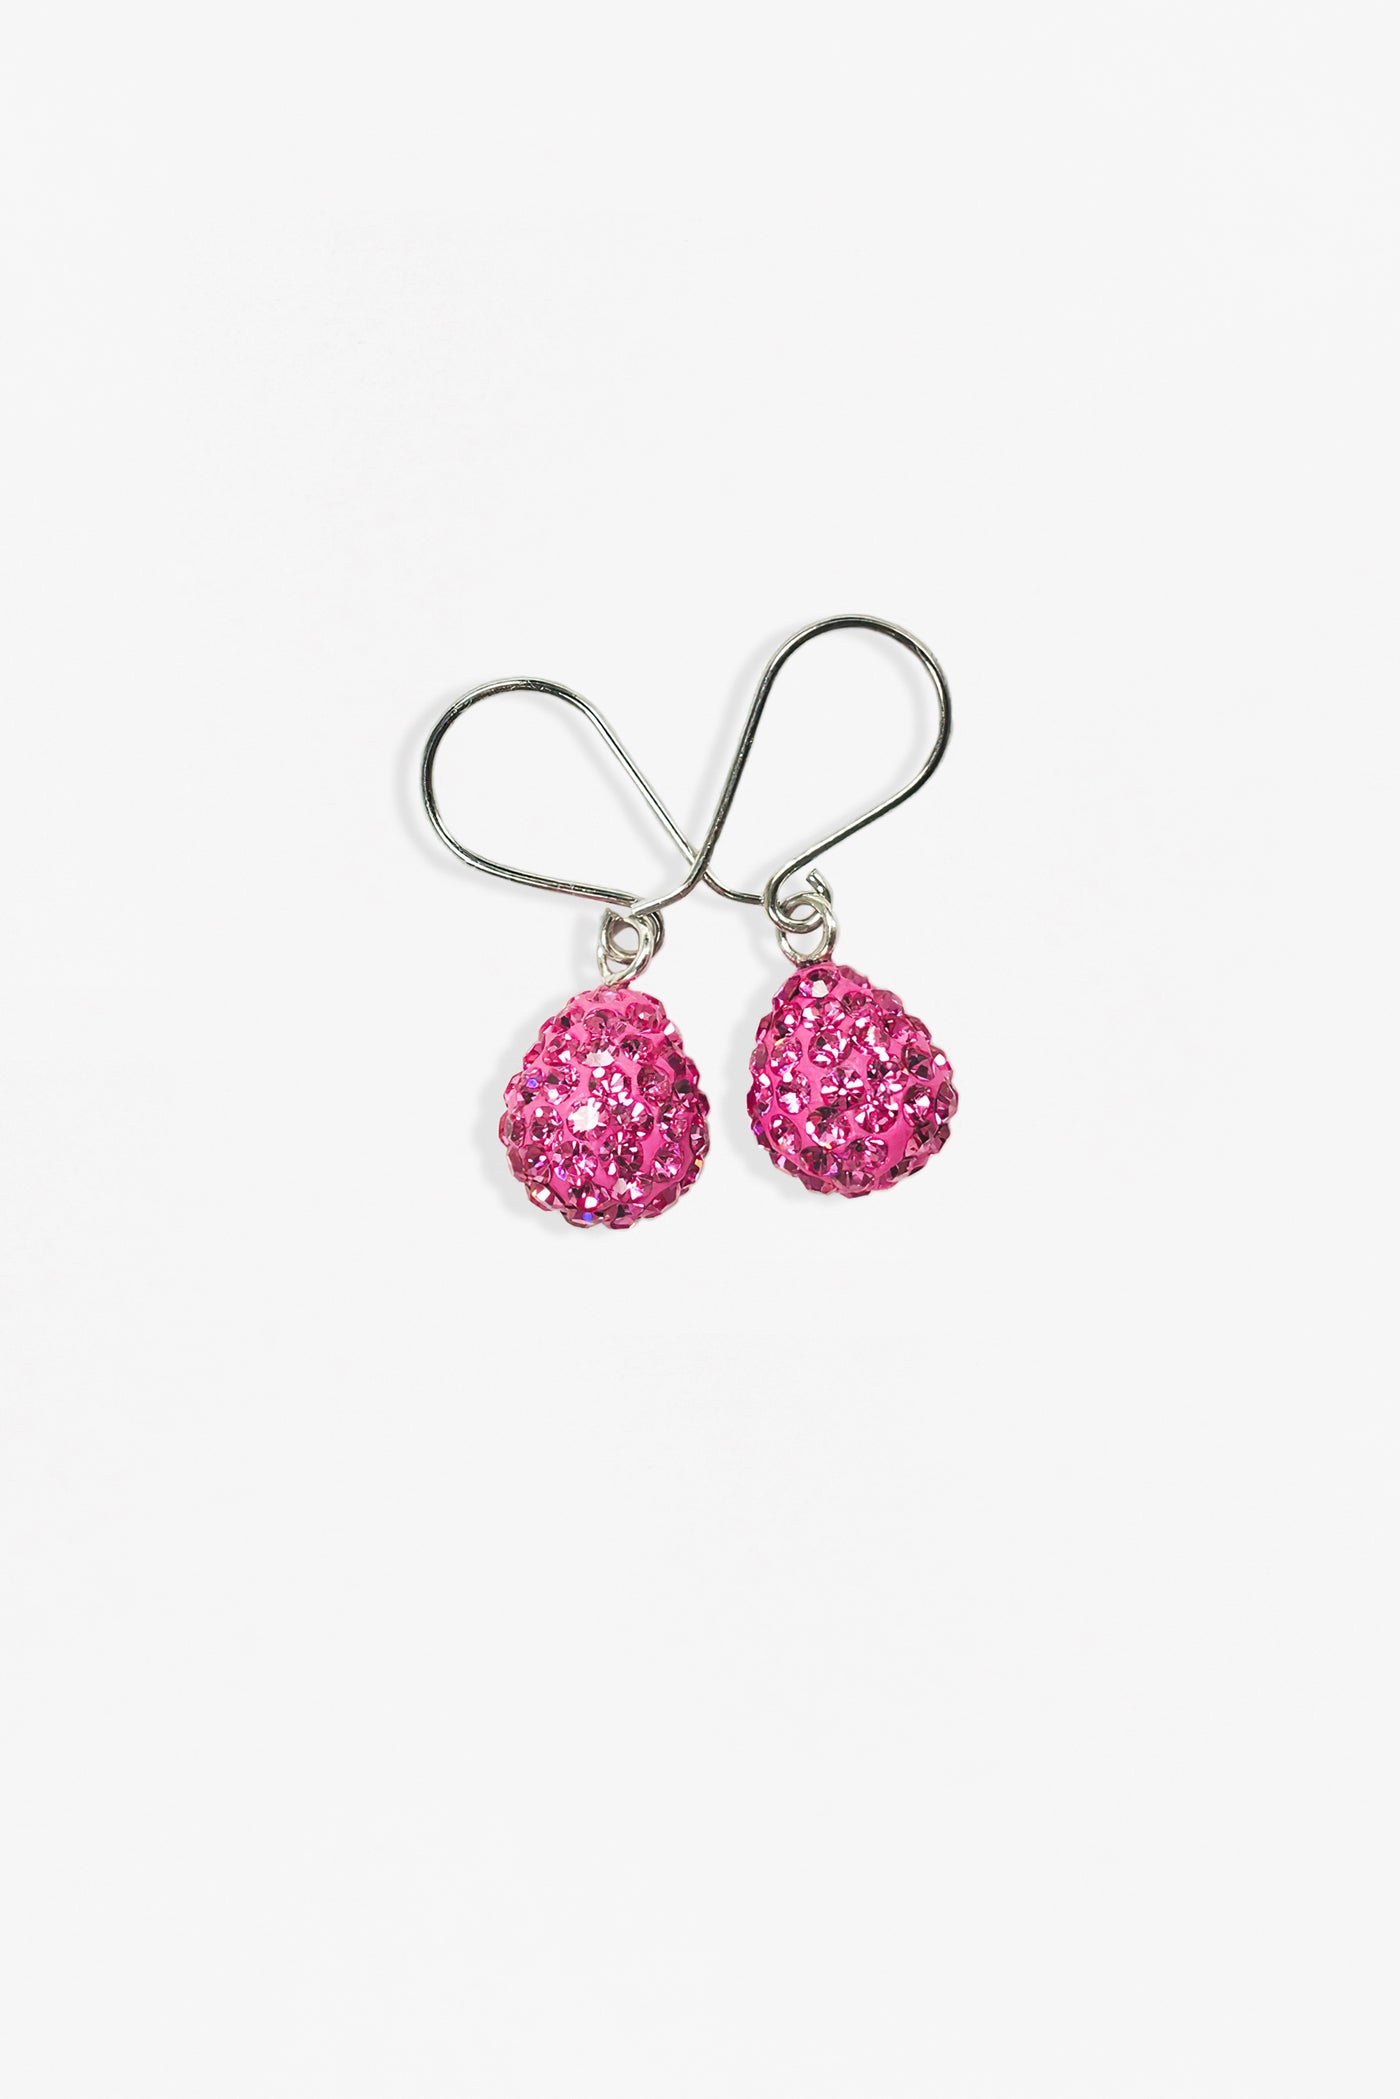 Swarovski Crystal Mini Teardrop Sterling Silver Earrings in Rose Pink | Annie and Sisters